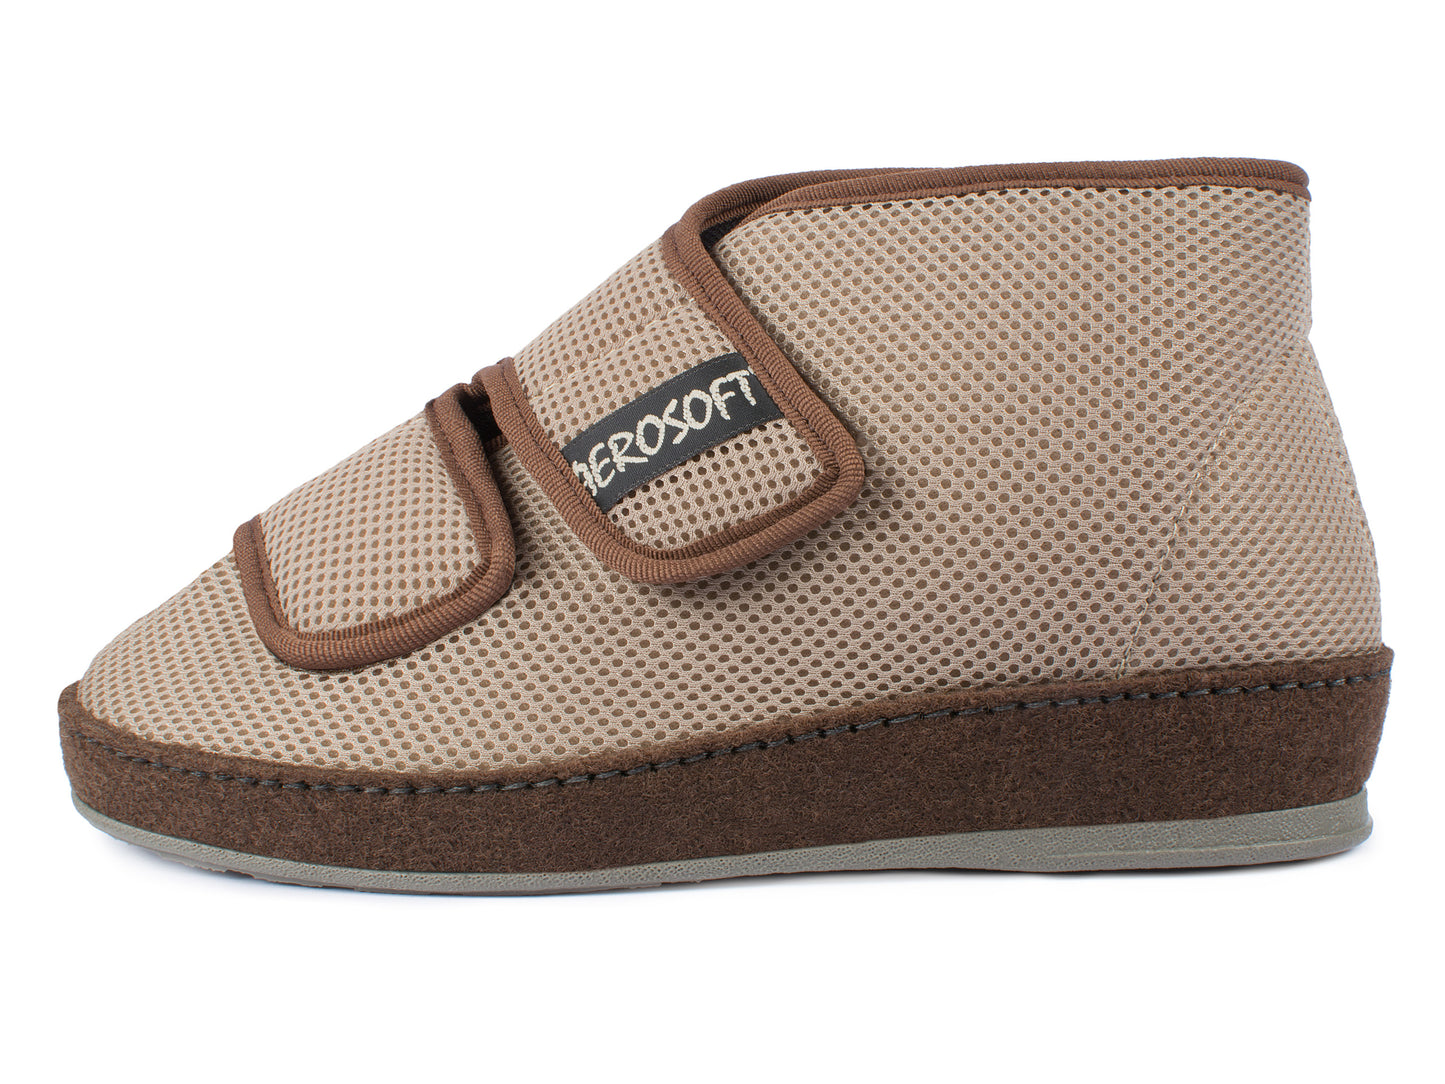 Aerosoft Klett-Stiefel 6062-4P, für Damen und Herren